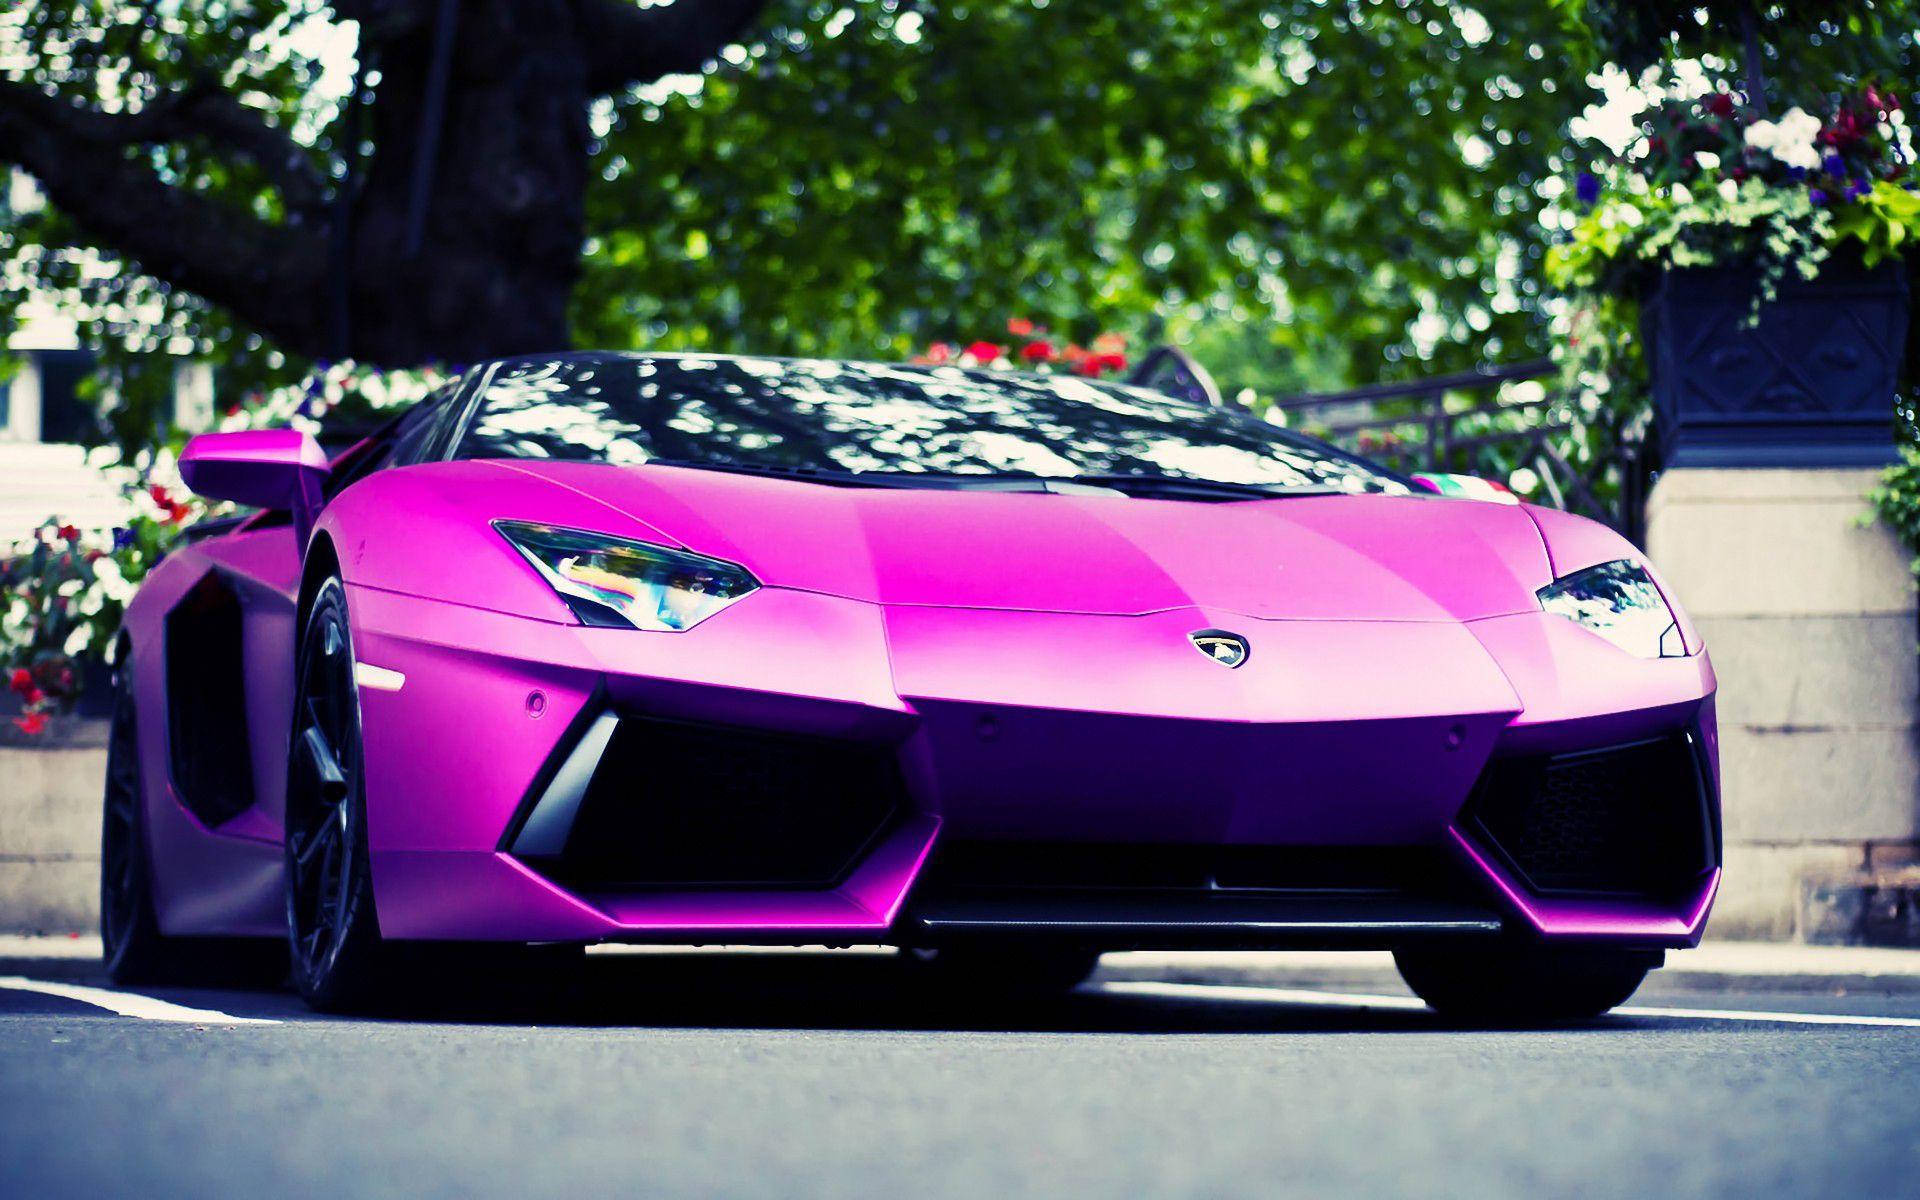 Purple Lamborghini Wallpaper Image Photo Picture Background